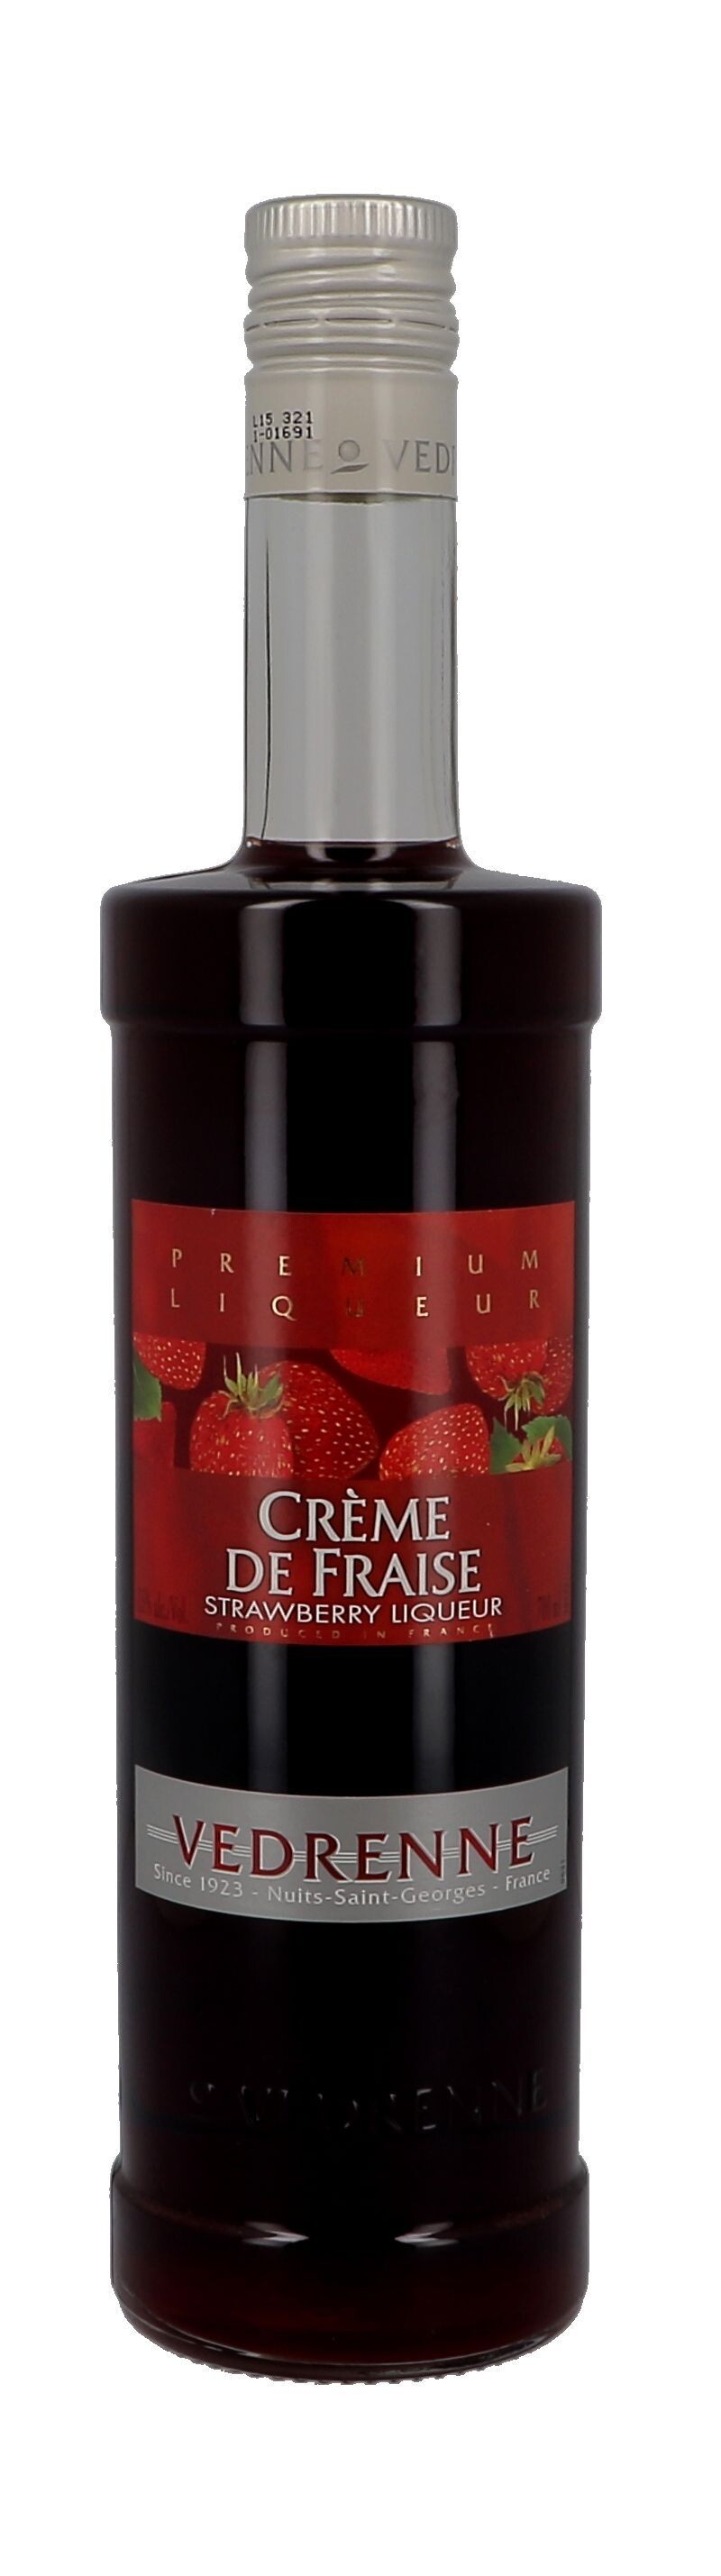 Vedrenne Creme de Fraise 70cl 15% Strawberry Liqueur